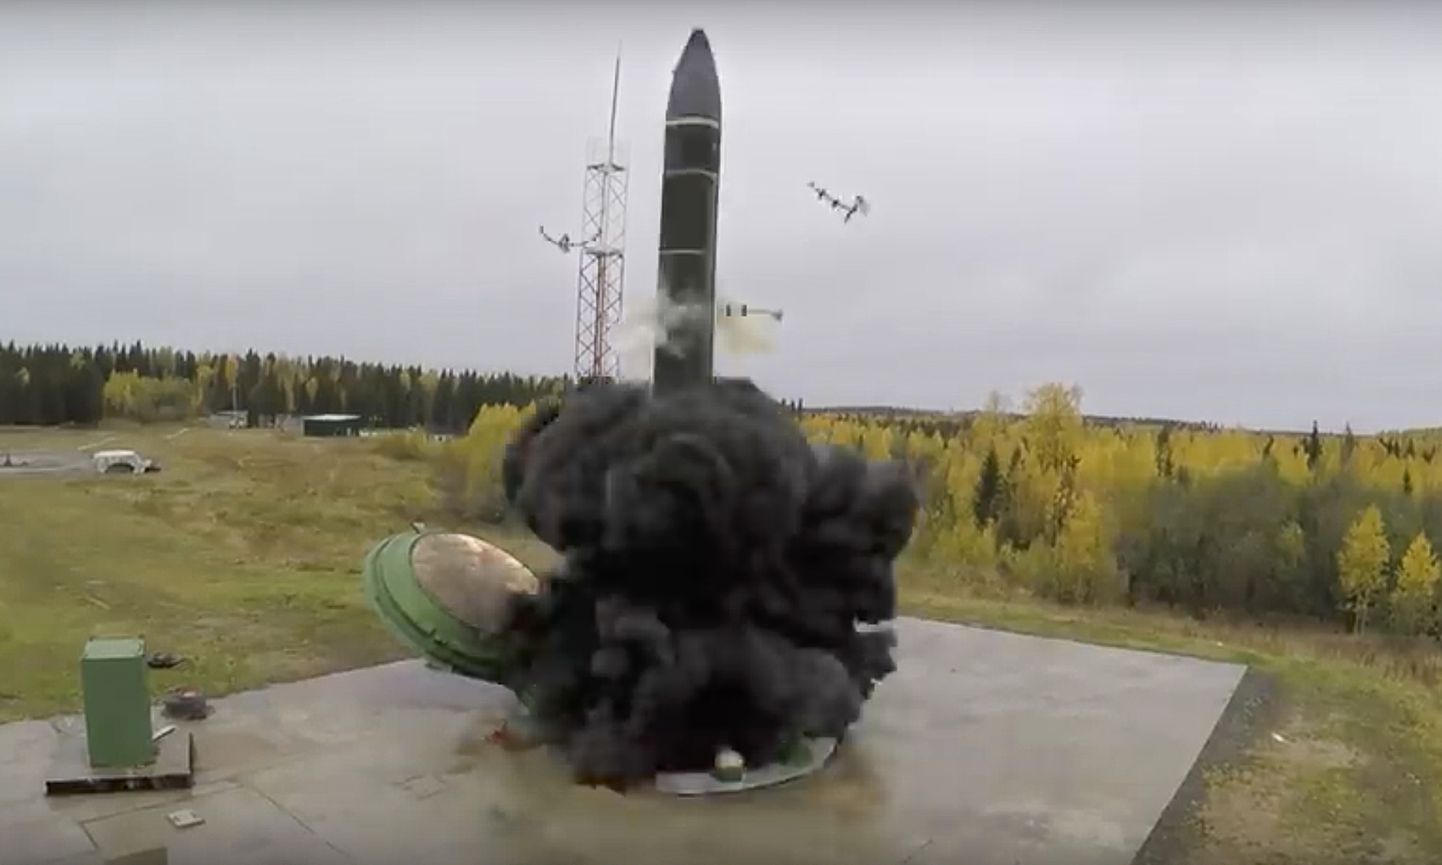 Venemaa mandritevahelise ballistilise raketi start. Foto on illustratiivne.